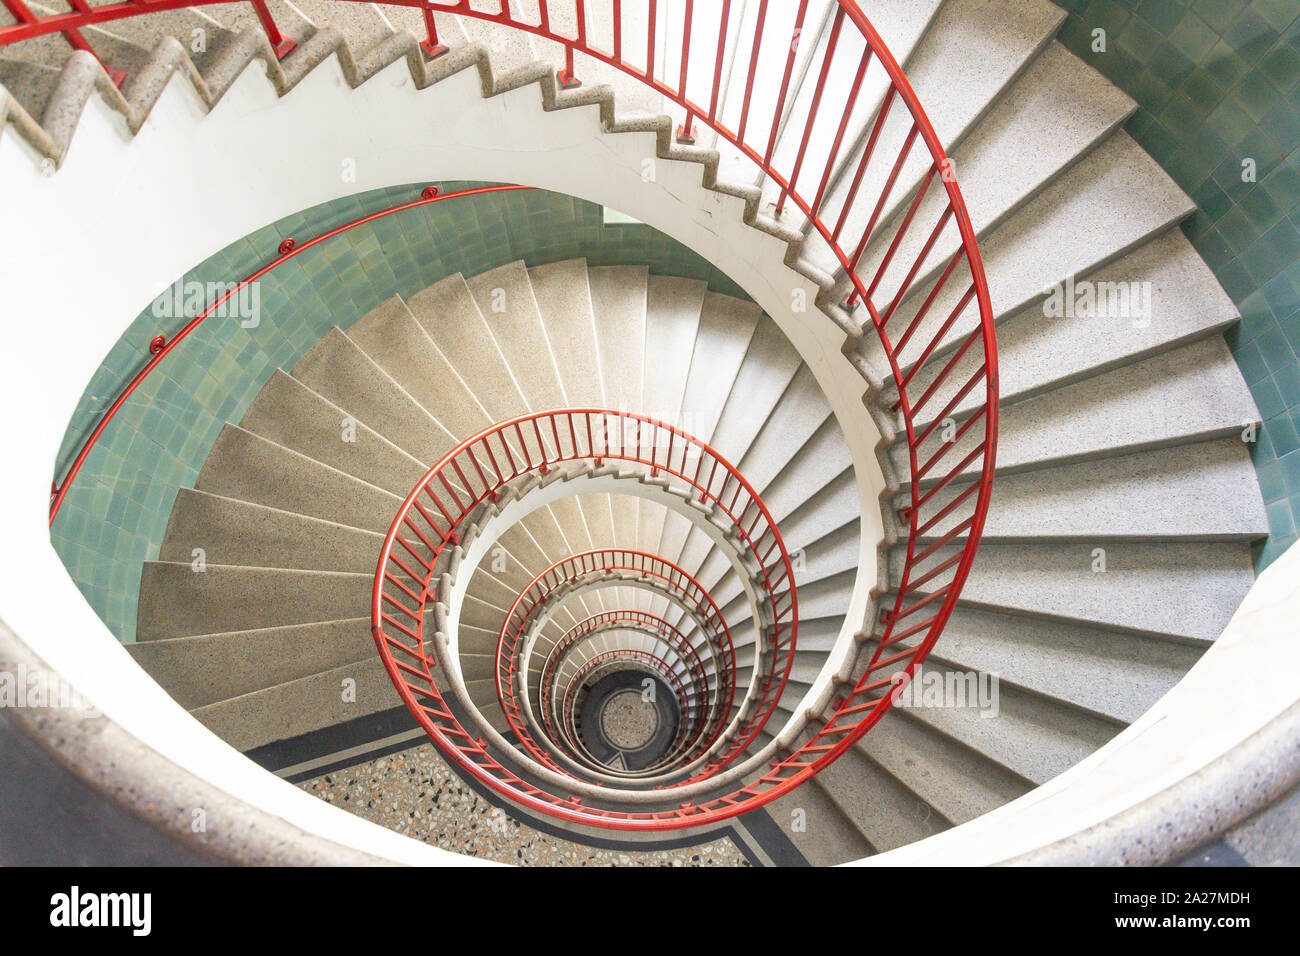 Spiral staircase inside the art-deco Neboticnik Building, Stefan Street, Ljubljana, Slovenia Stock Photo